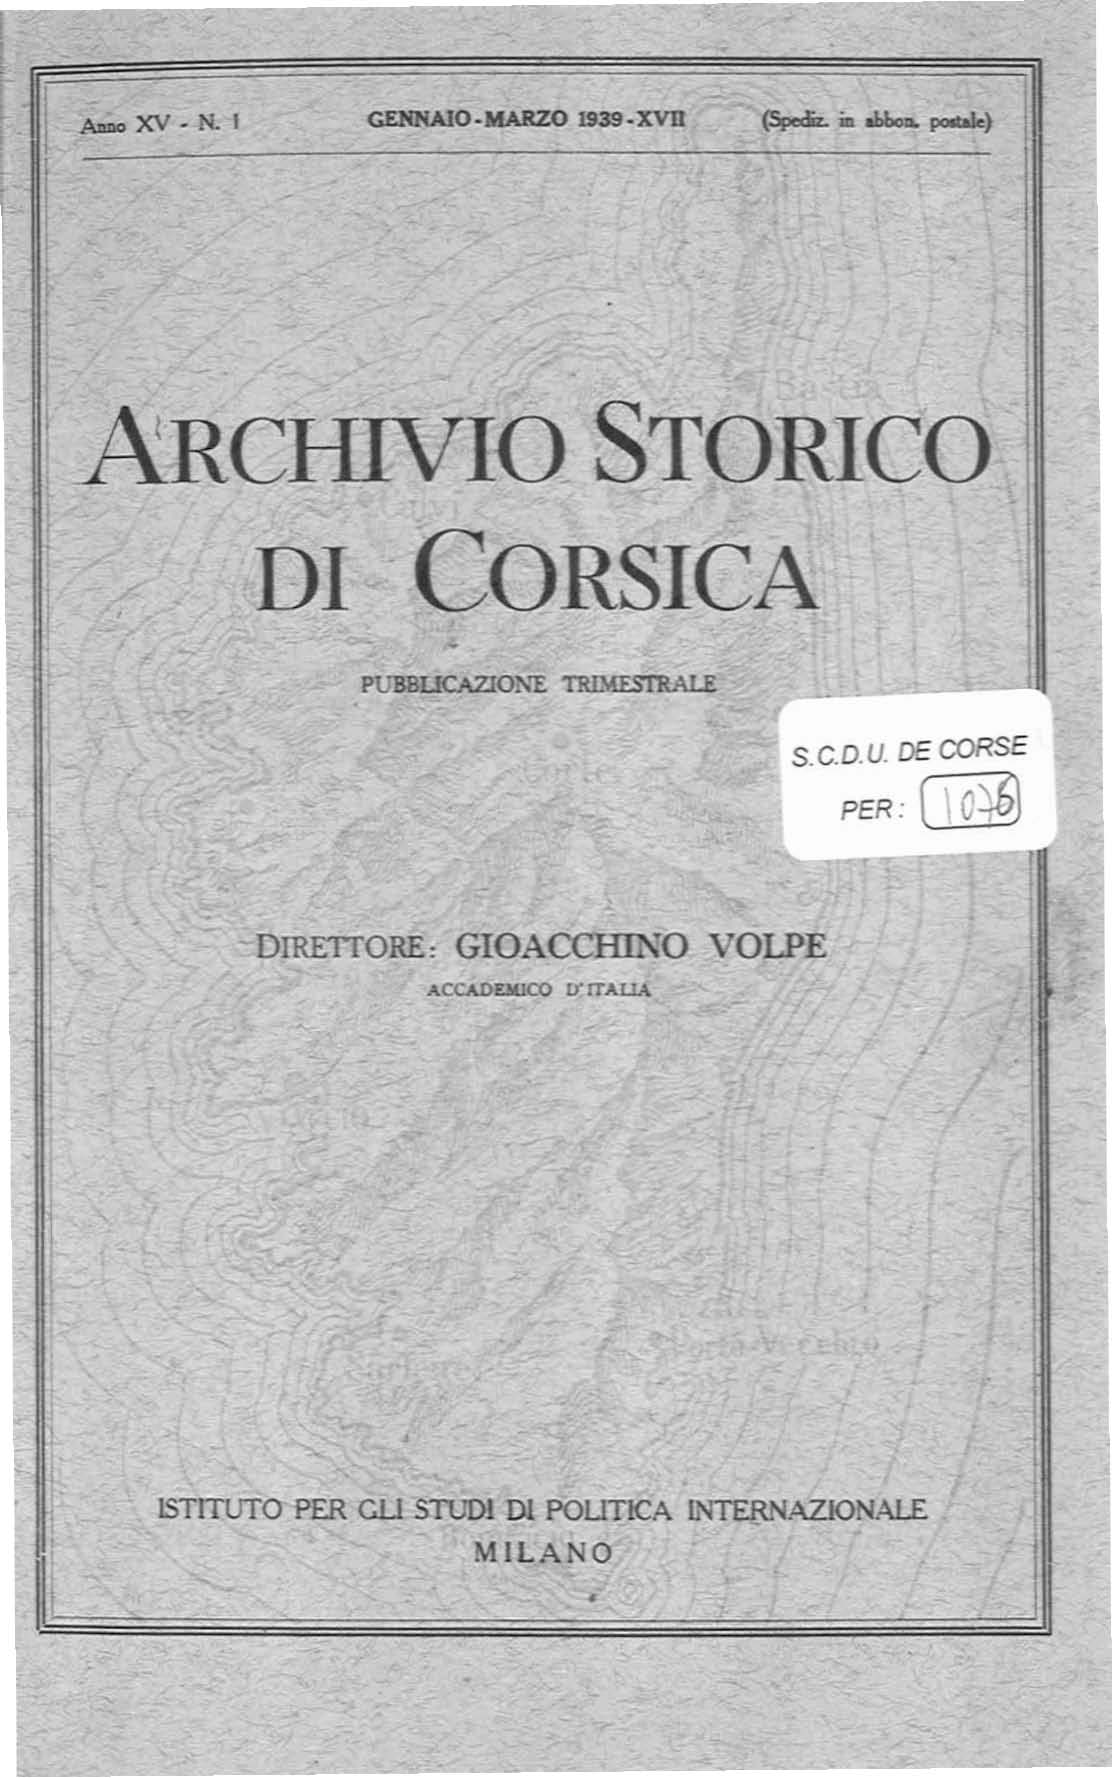 >Archivio Storico di Corsica (1939)